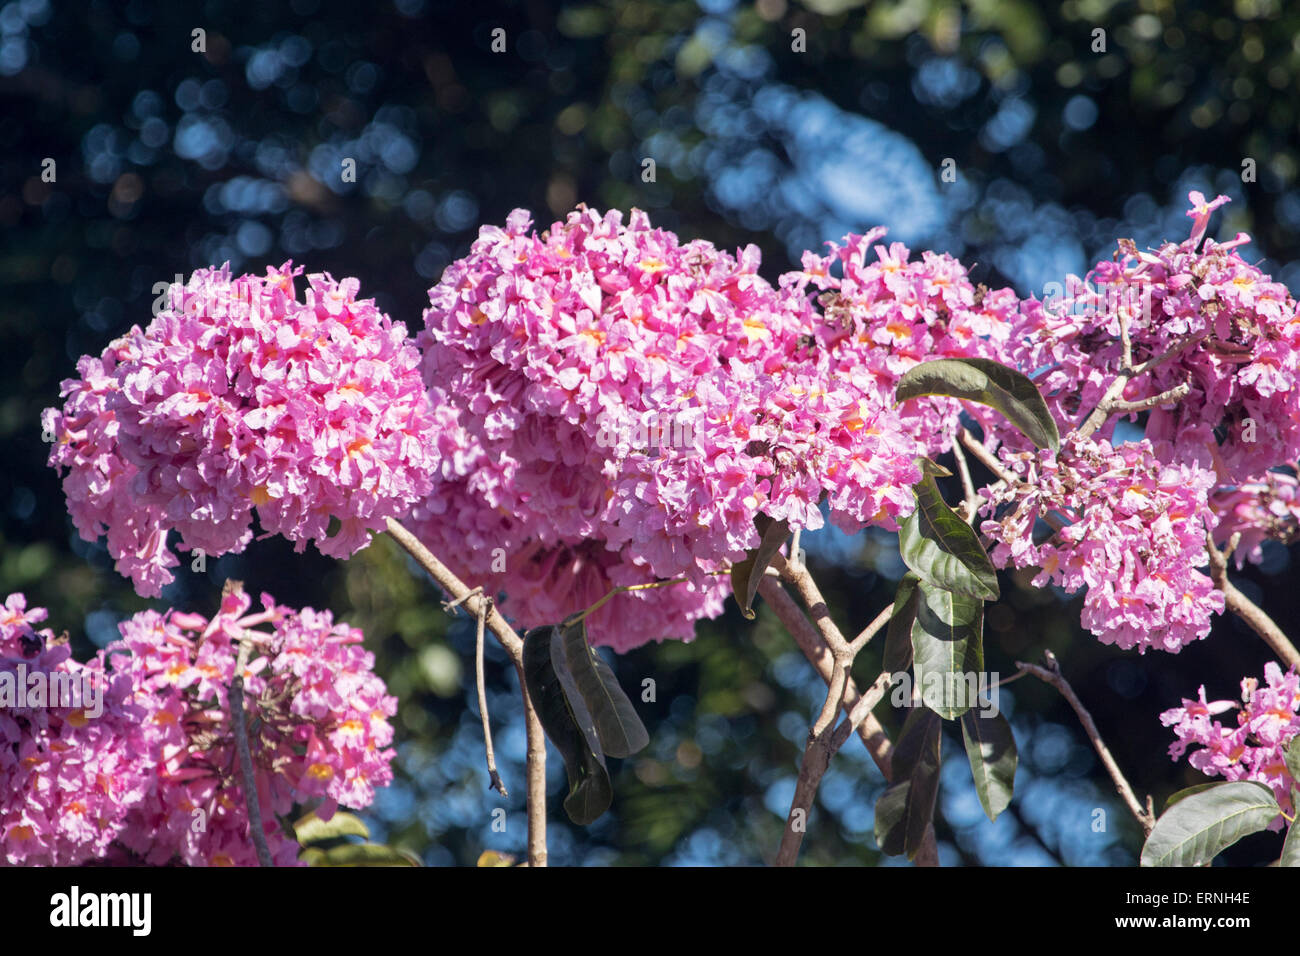 Les grandes grappes de fleurs rose vif de Tabebuia impetiginosa, arbre à trompettes roses, contre la lumière fond sombre en Australie Banque D'Images